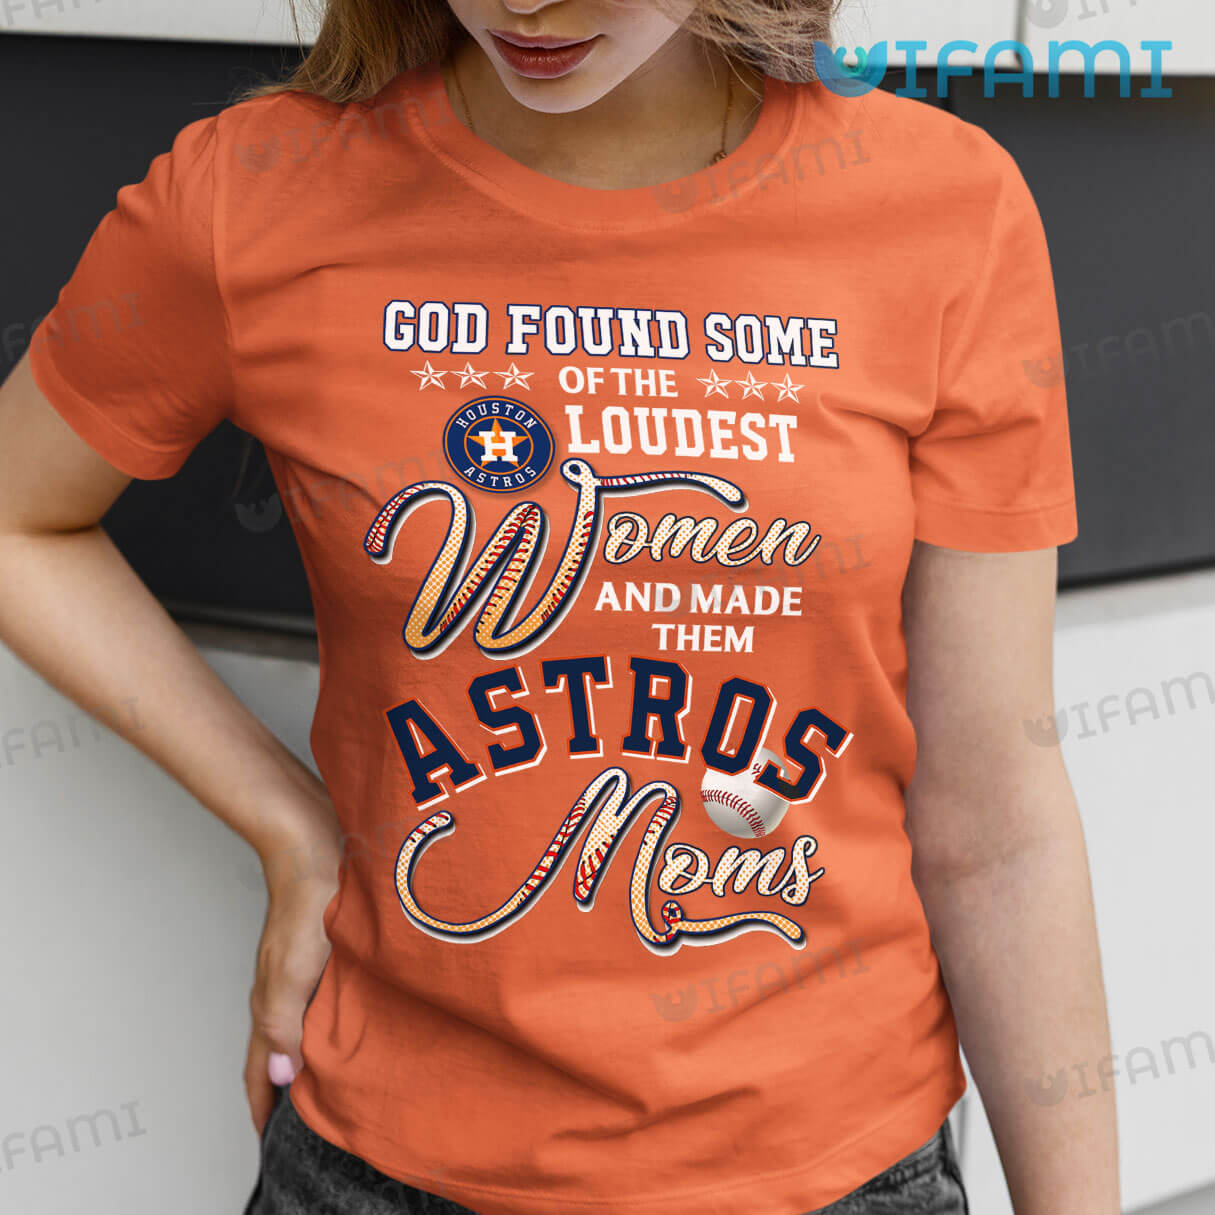 houston astros shirt women